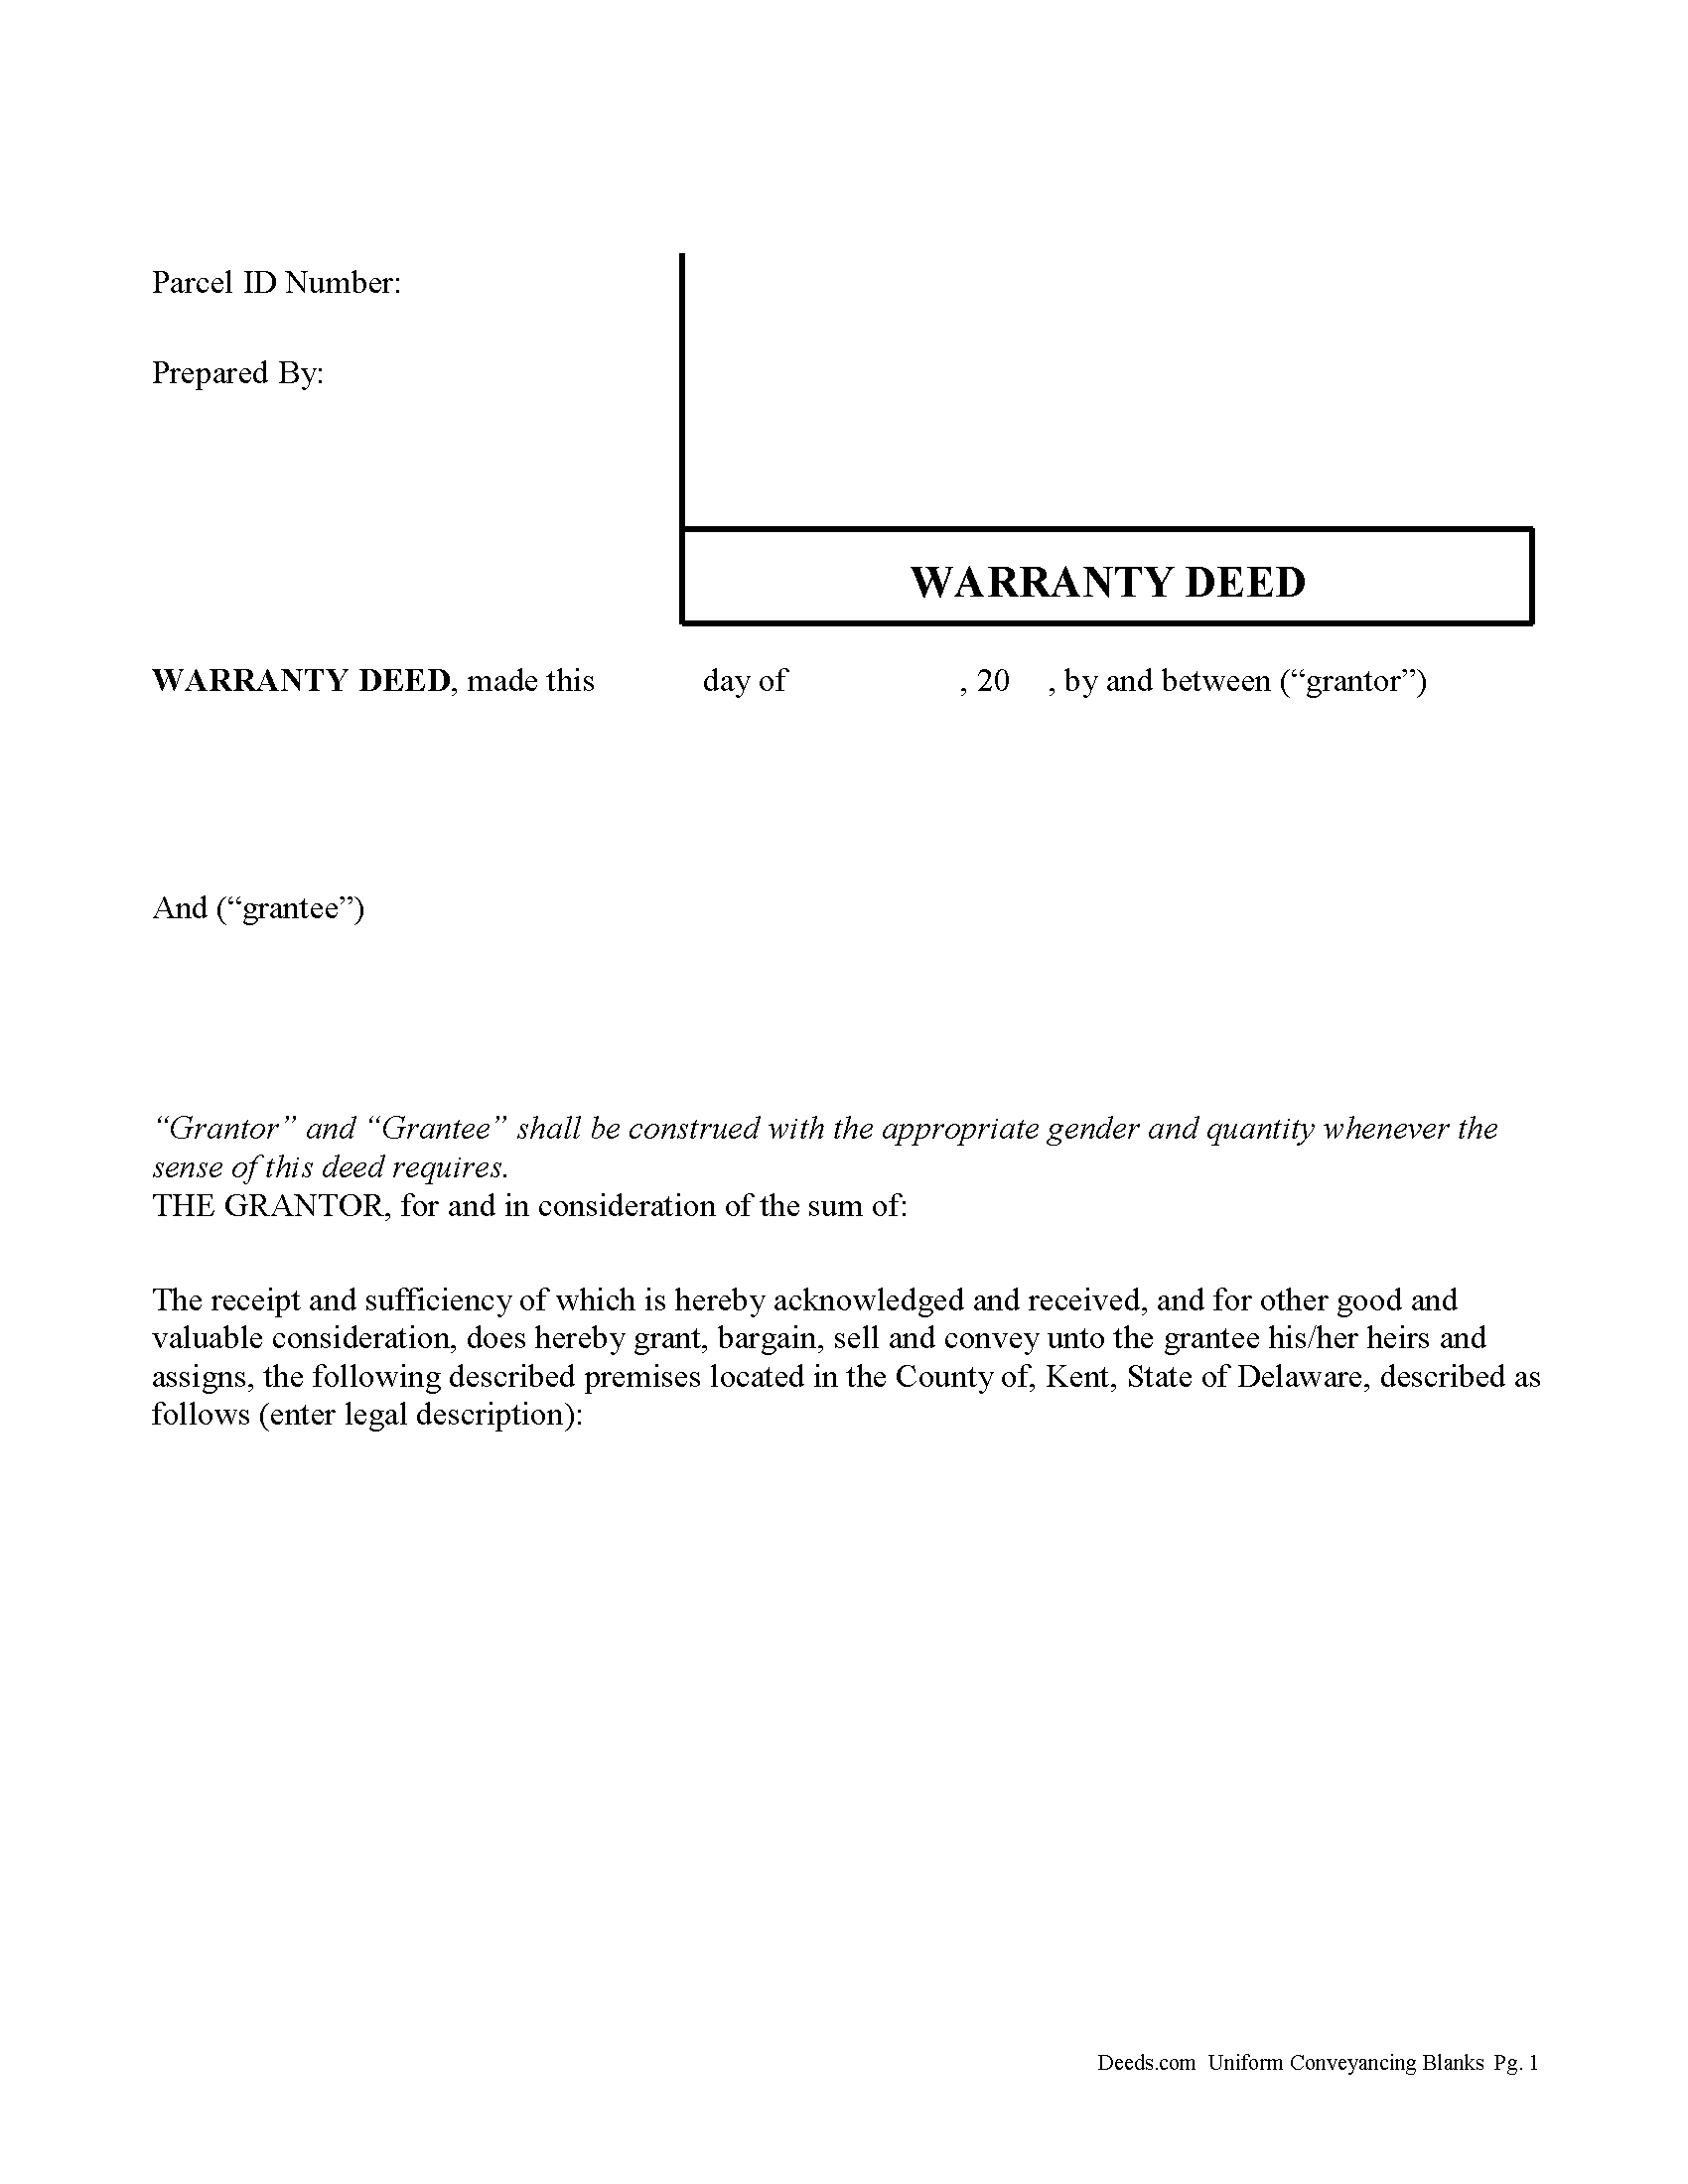 Warranty Deed Form